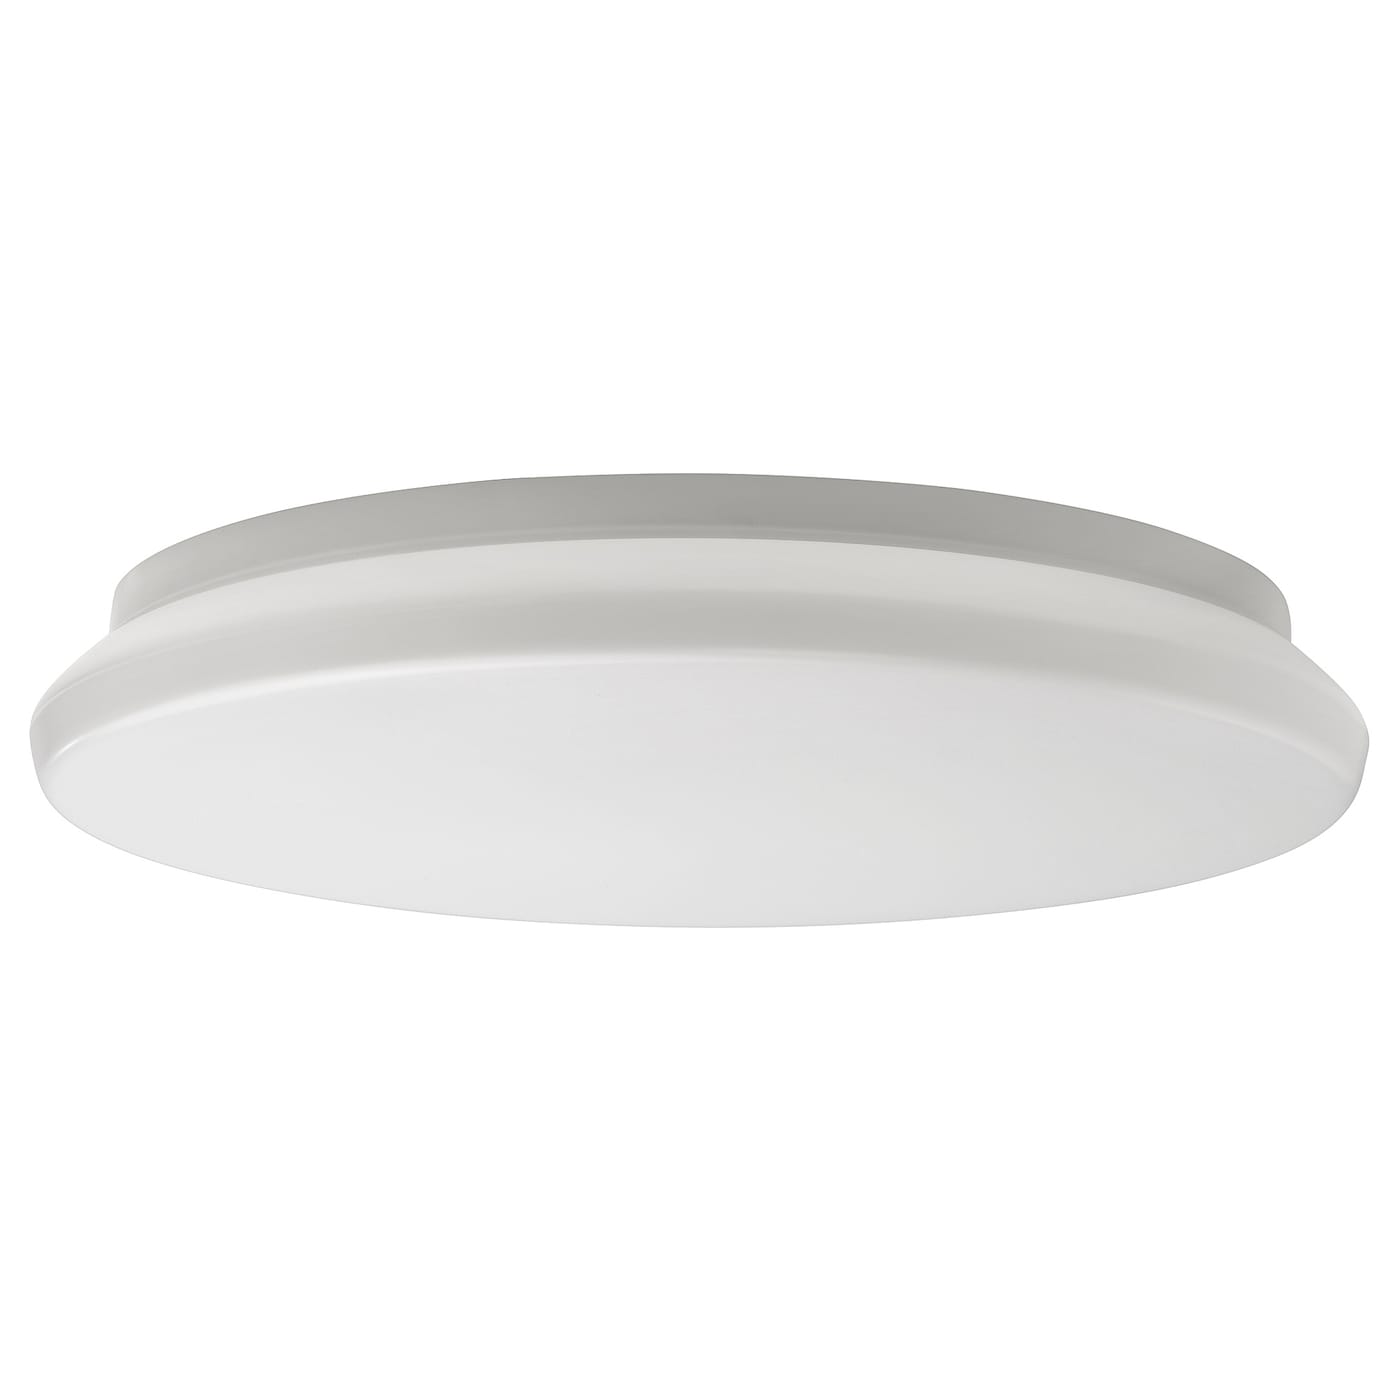 IKEA STOFTMOLN Lampa sufitowa/ścienna LED, smart bezprzewodowy przyciemniany/ciepły biały biały, 37 cm